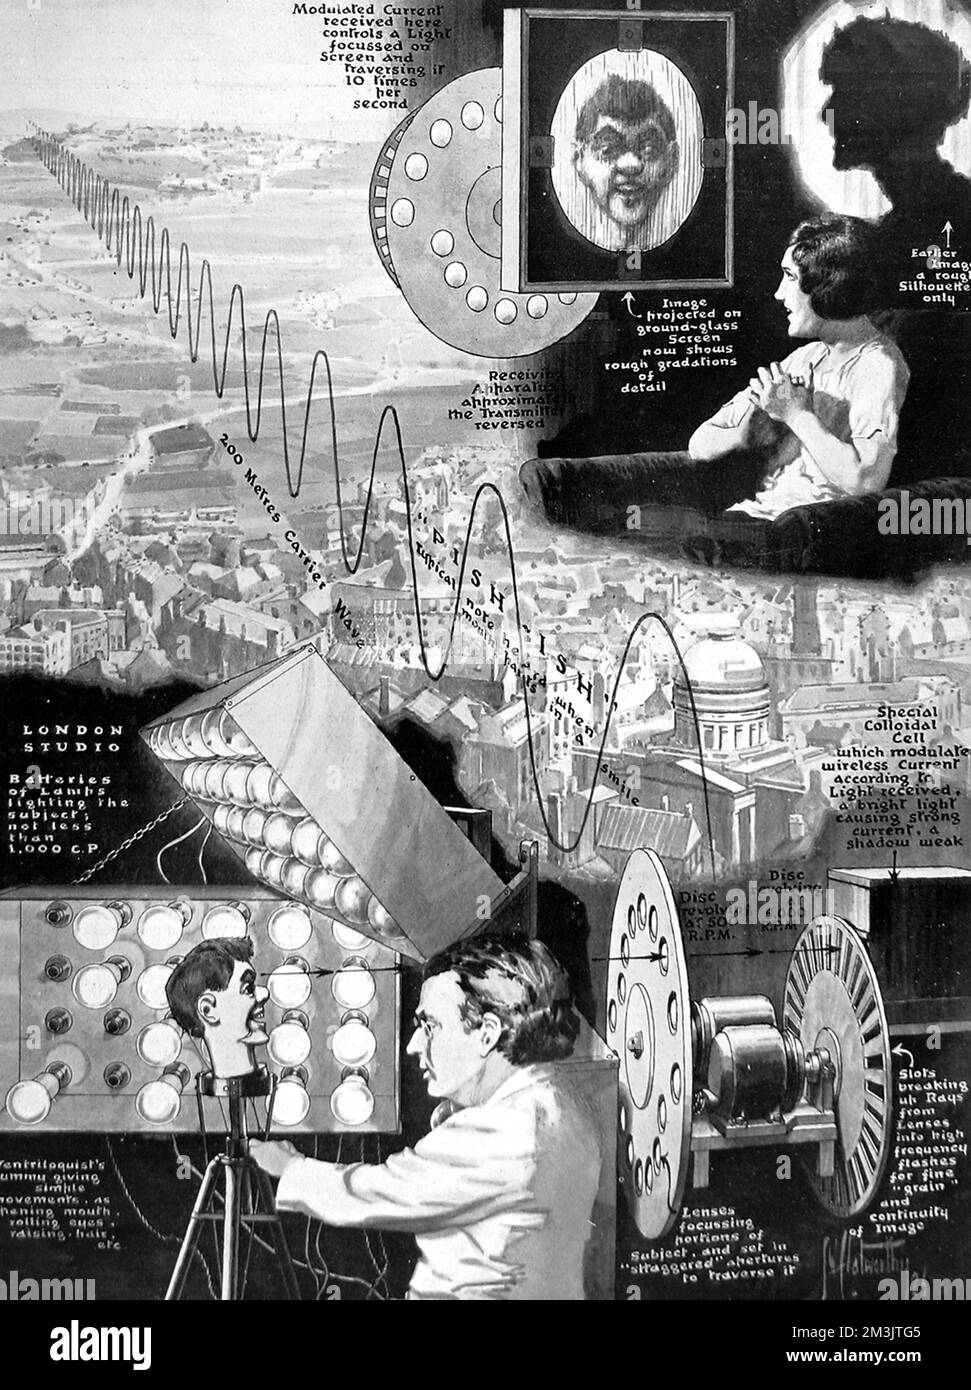 Envoi de photos par liaison radio. Le système de « télévision » de Baird transmet ses images sans fil. John Logie Baird a transmis une image en mouvement sans fil, montrant des gradations de lumière et d'ombre, avec un peu de couleur, rouge et bleu. La photo a été envoyée à partir d'une distance de 9 miles de Londres à Harrow. Date: 1926 Banque D'Images